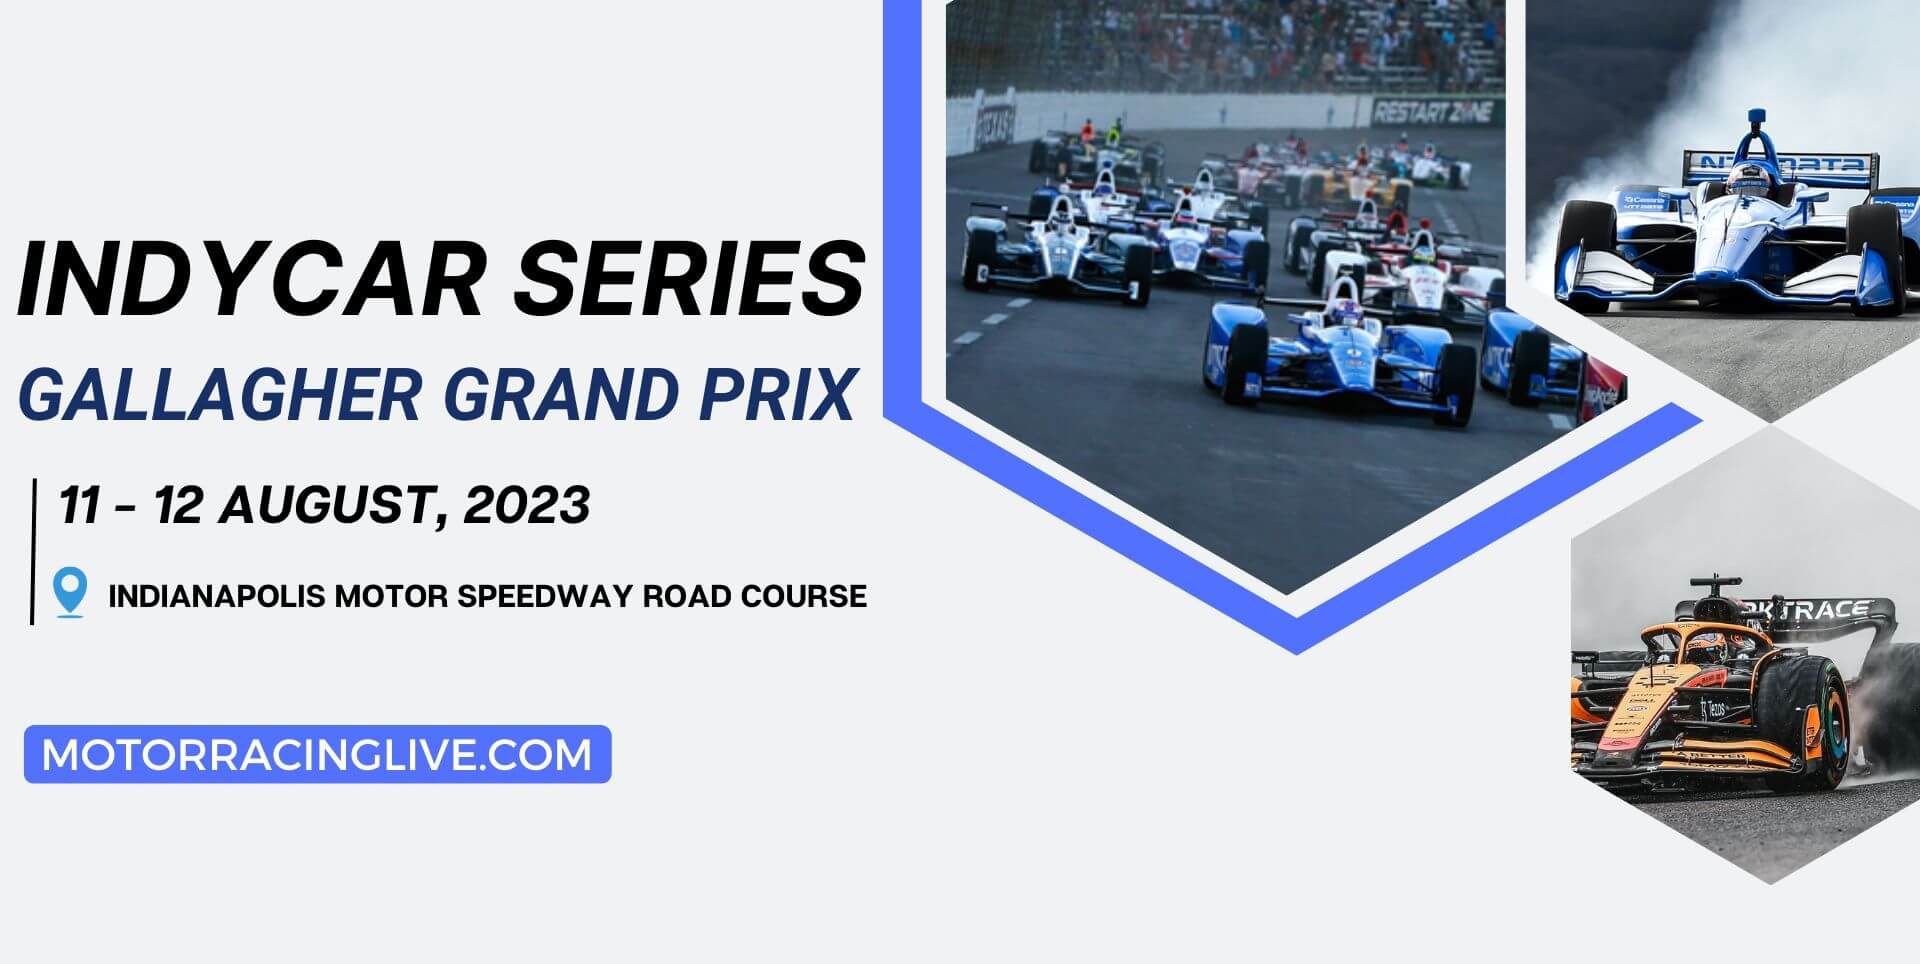 Gallagher Grand Prix Live Stream 2023 | Indycar